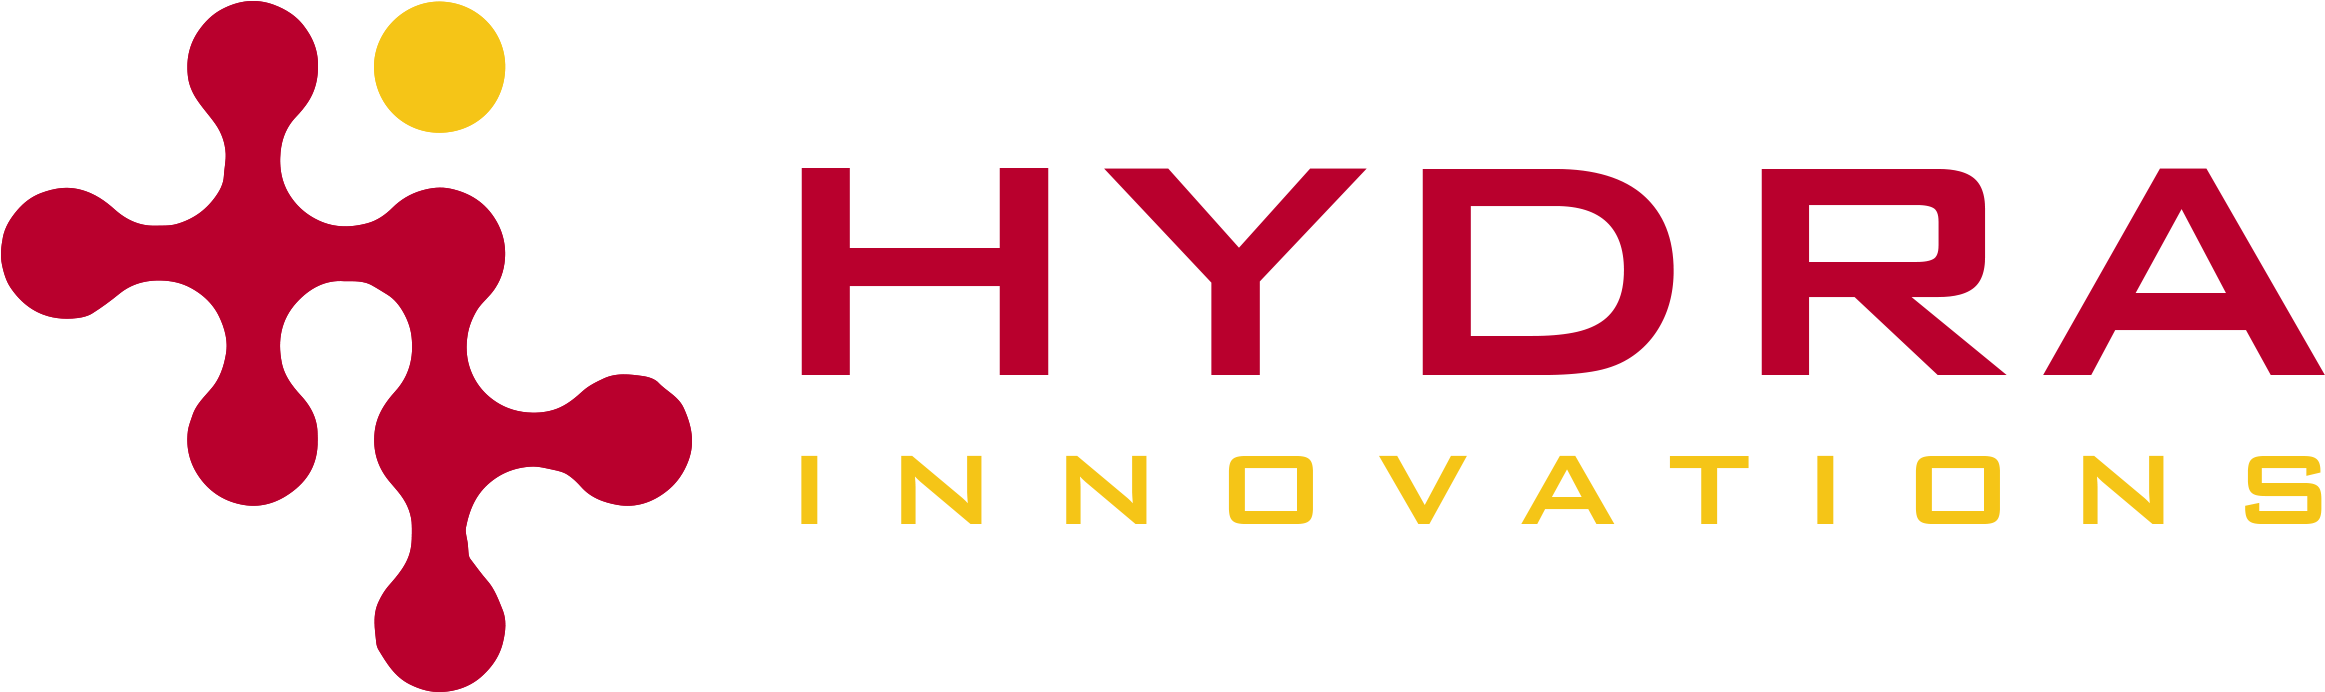 Hydra Logo PNG Hochwertiges Bild